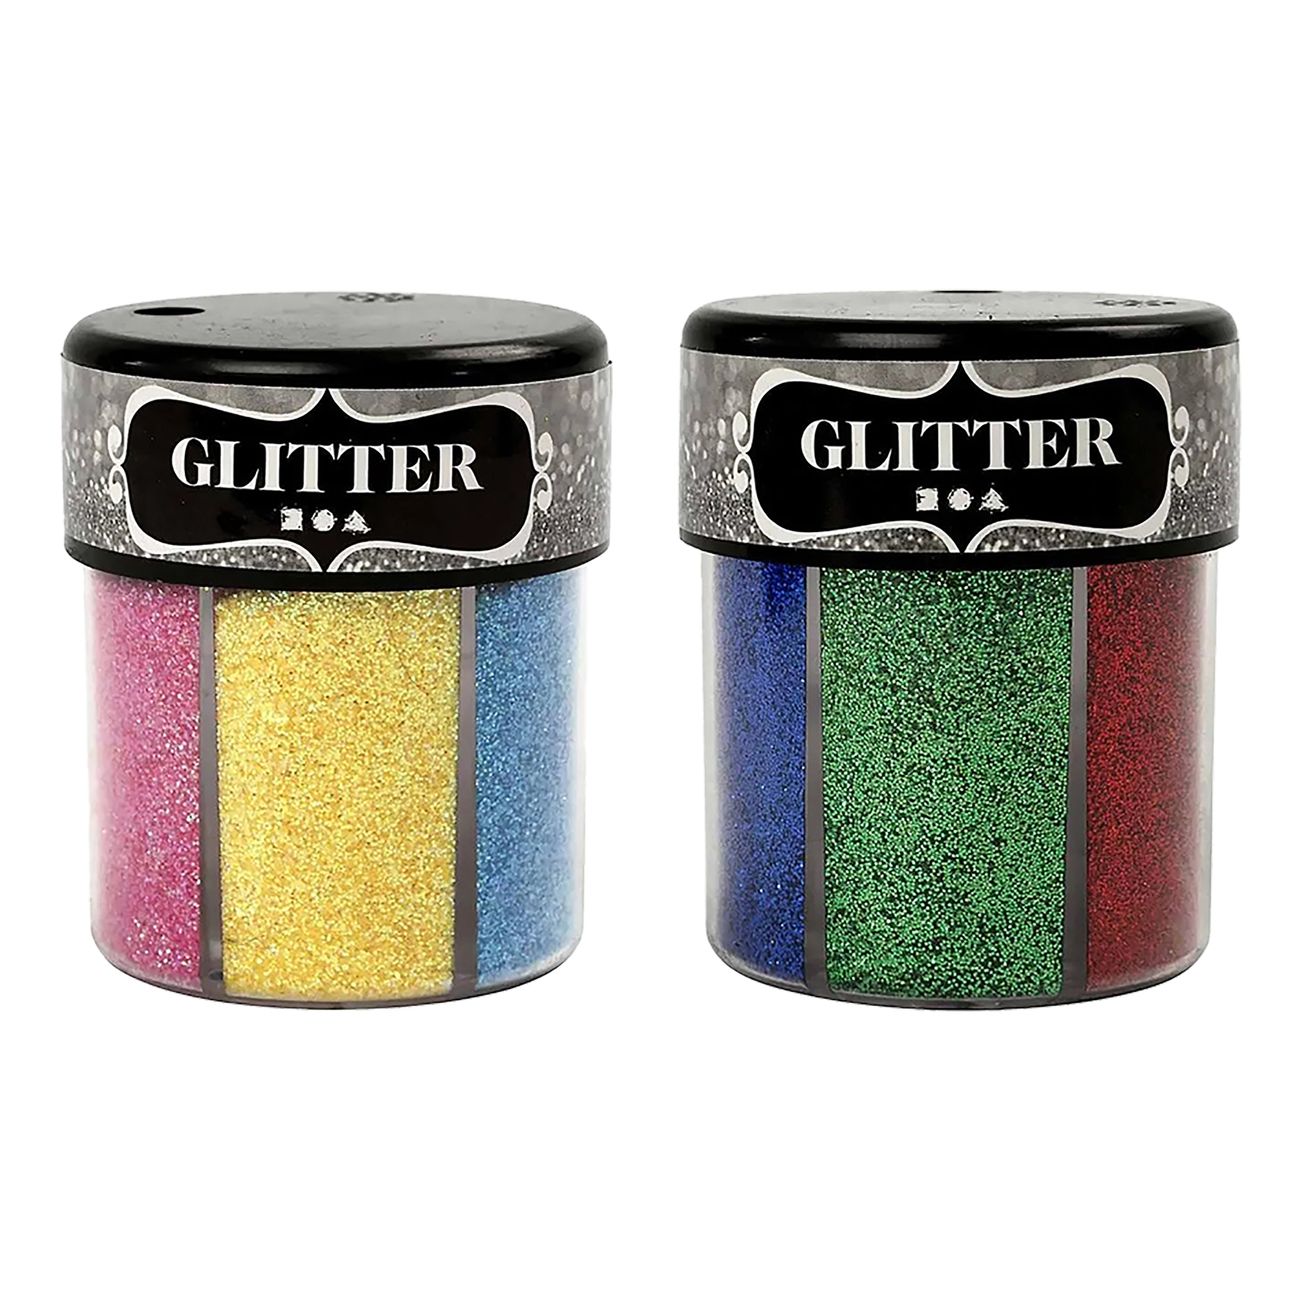 glitter-pa-burk-90999-1